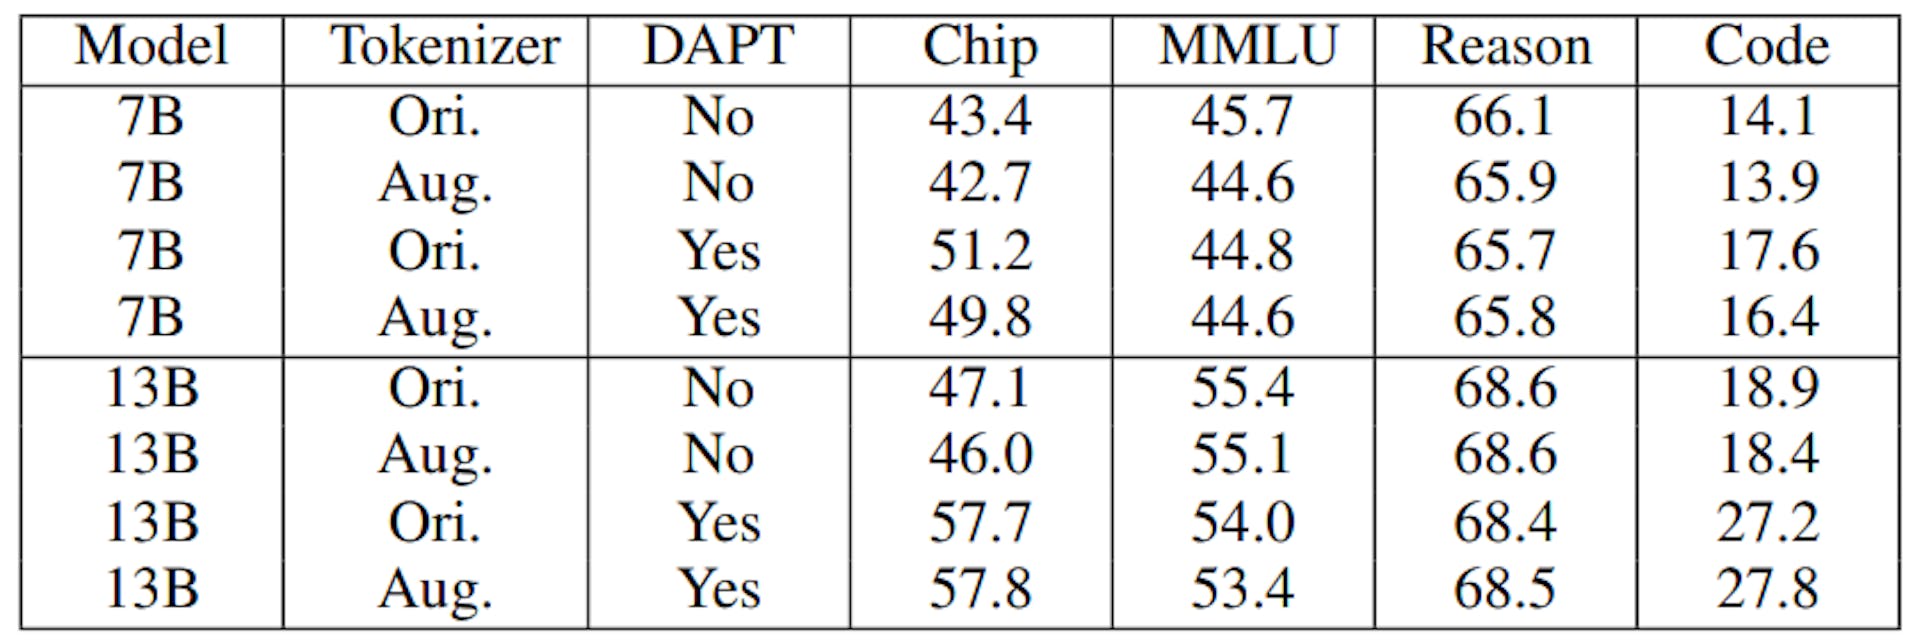 表 IX：使用不同标记器的 ChipNeMo 模型的评估结果。Aug. 表示增强标记器，Ori. 表示使用 LLaMA2 原始标记器。使用不带 DAPT 的增强标记器对应于第 III-A 节中的模型初始化。